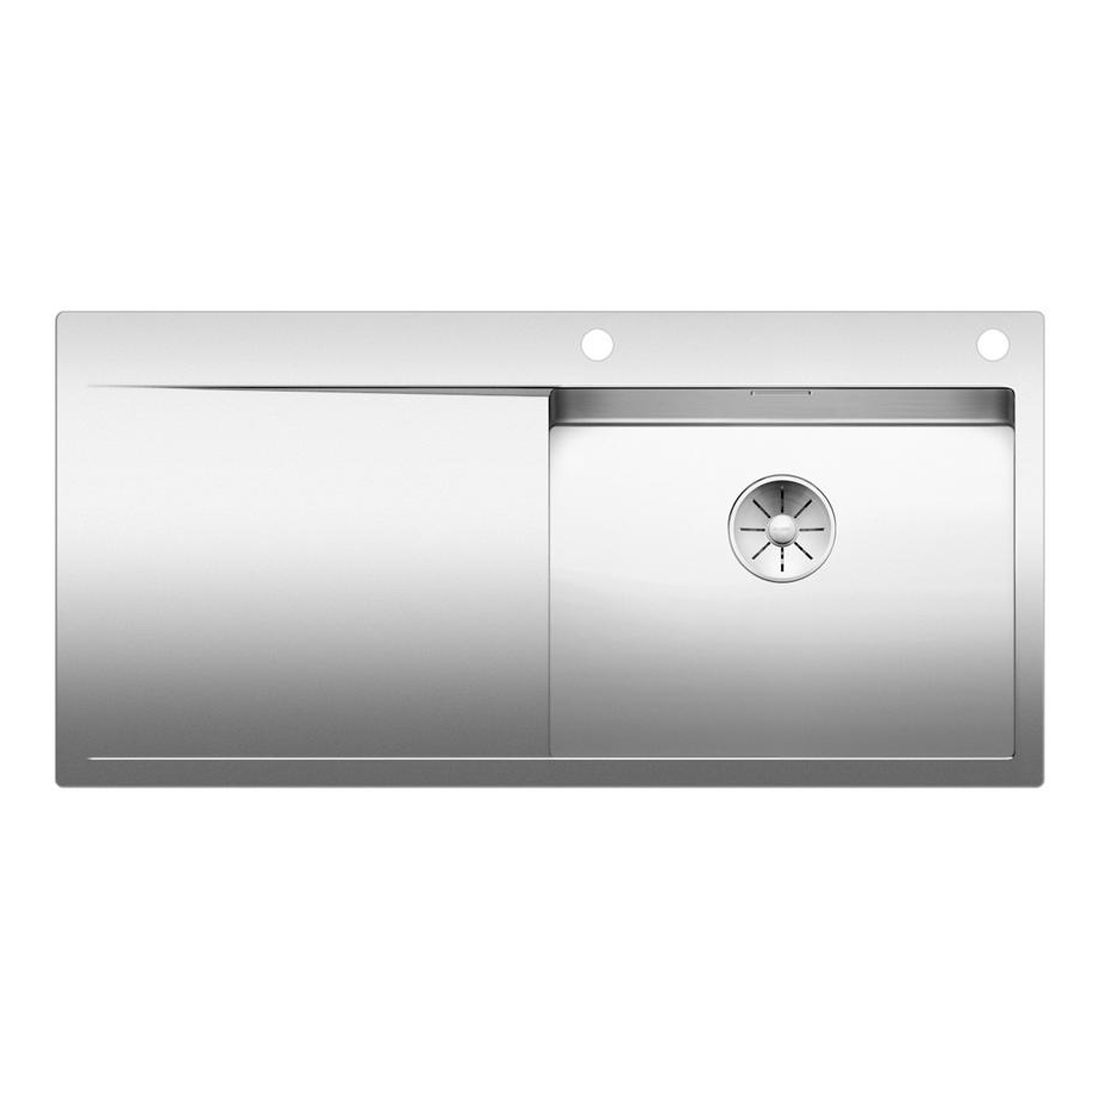 Кухонная мойка Blanco Flow XL 6S-IF полированная сталь набор аксессуаров inda indissima barra 400cns51n09mhw calacatta сталь